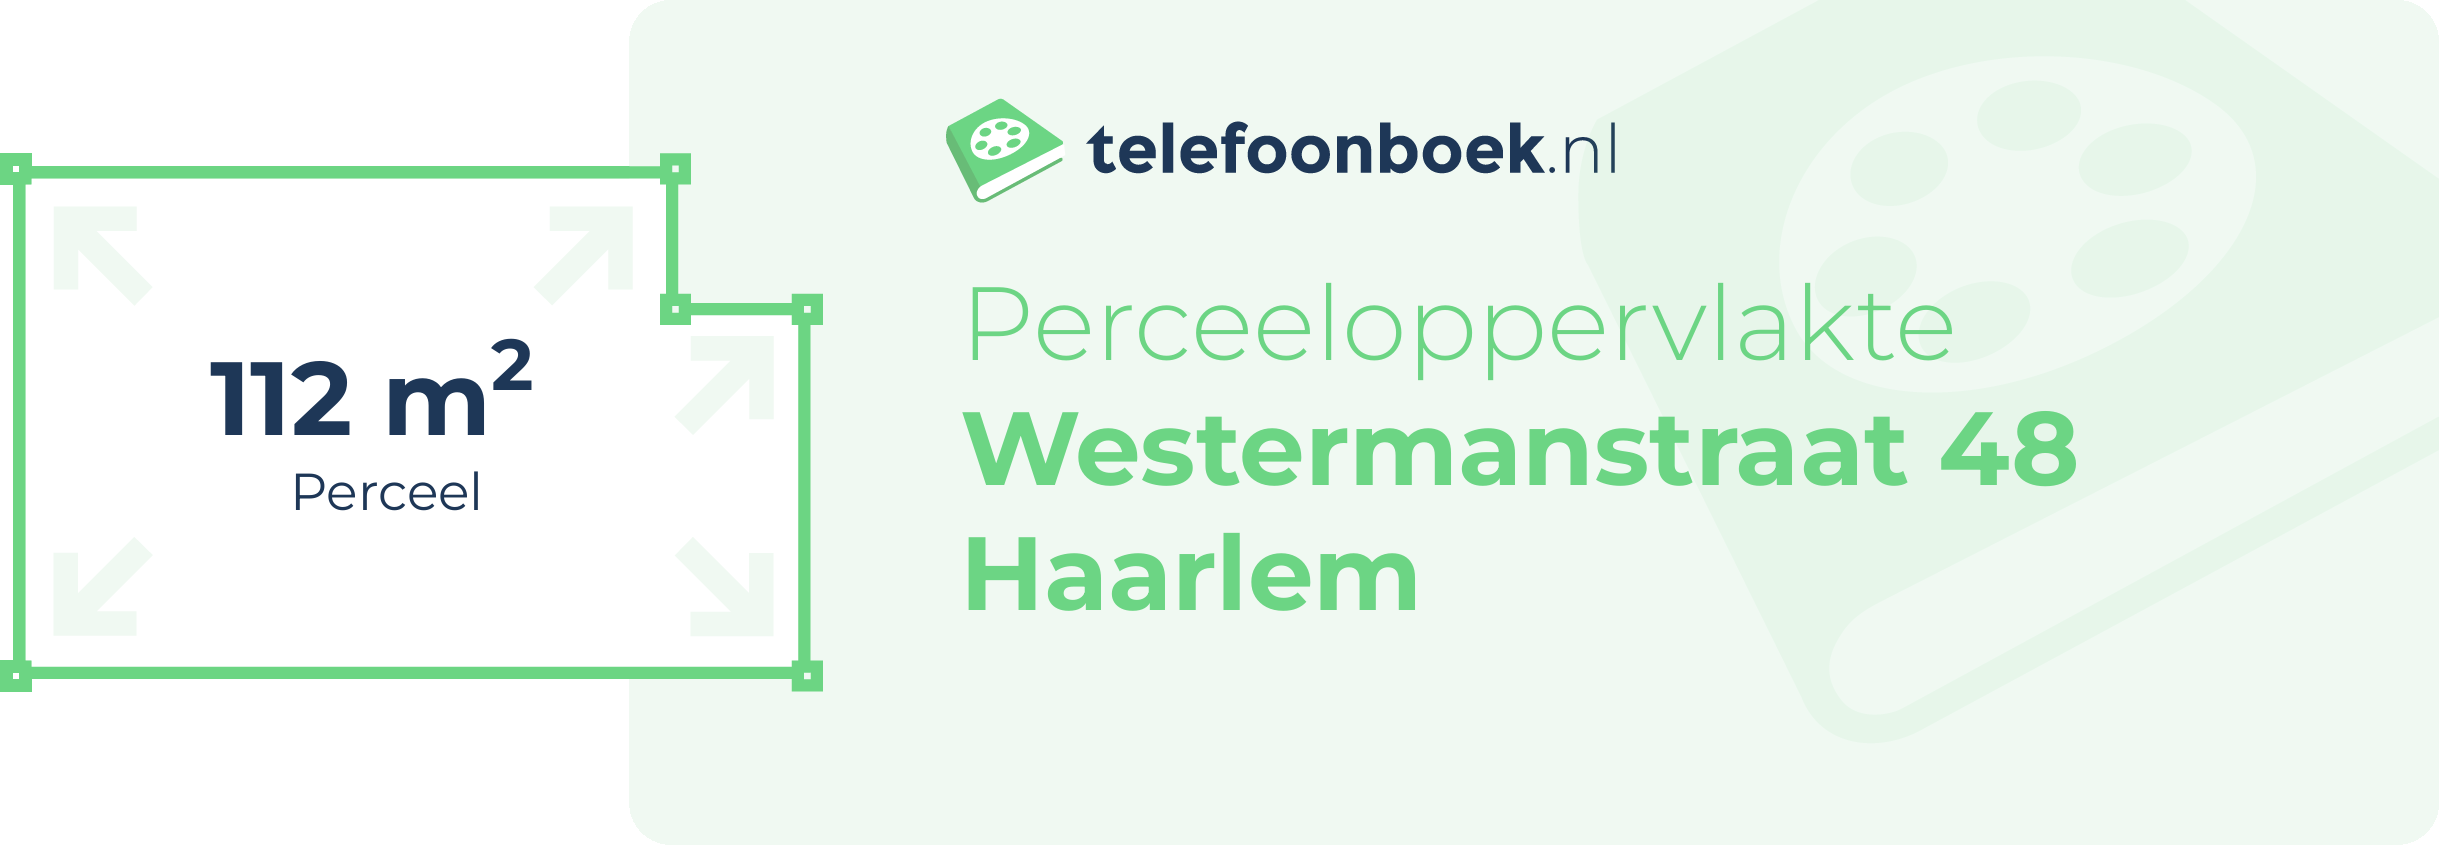 Perceeloppervlakte Westermanstraat 48 Haarlem